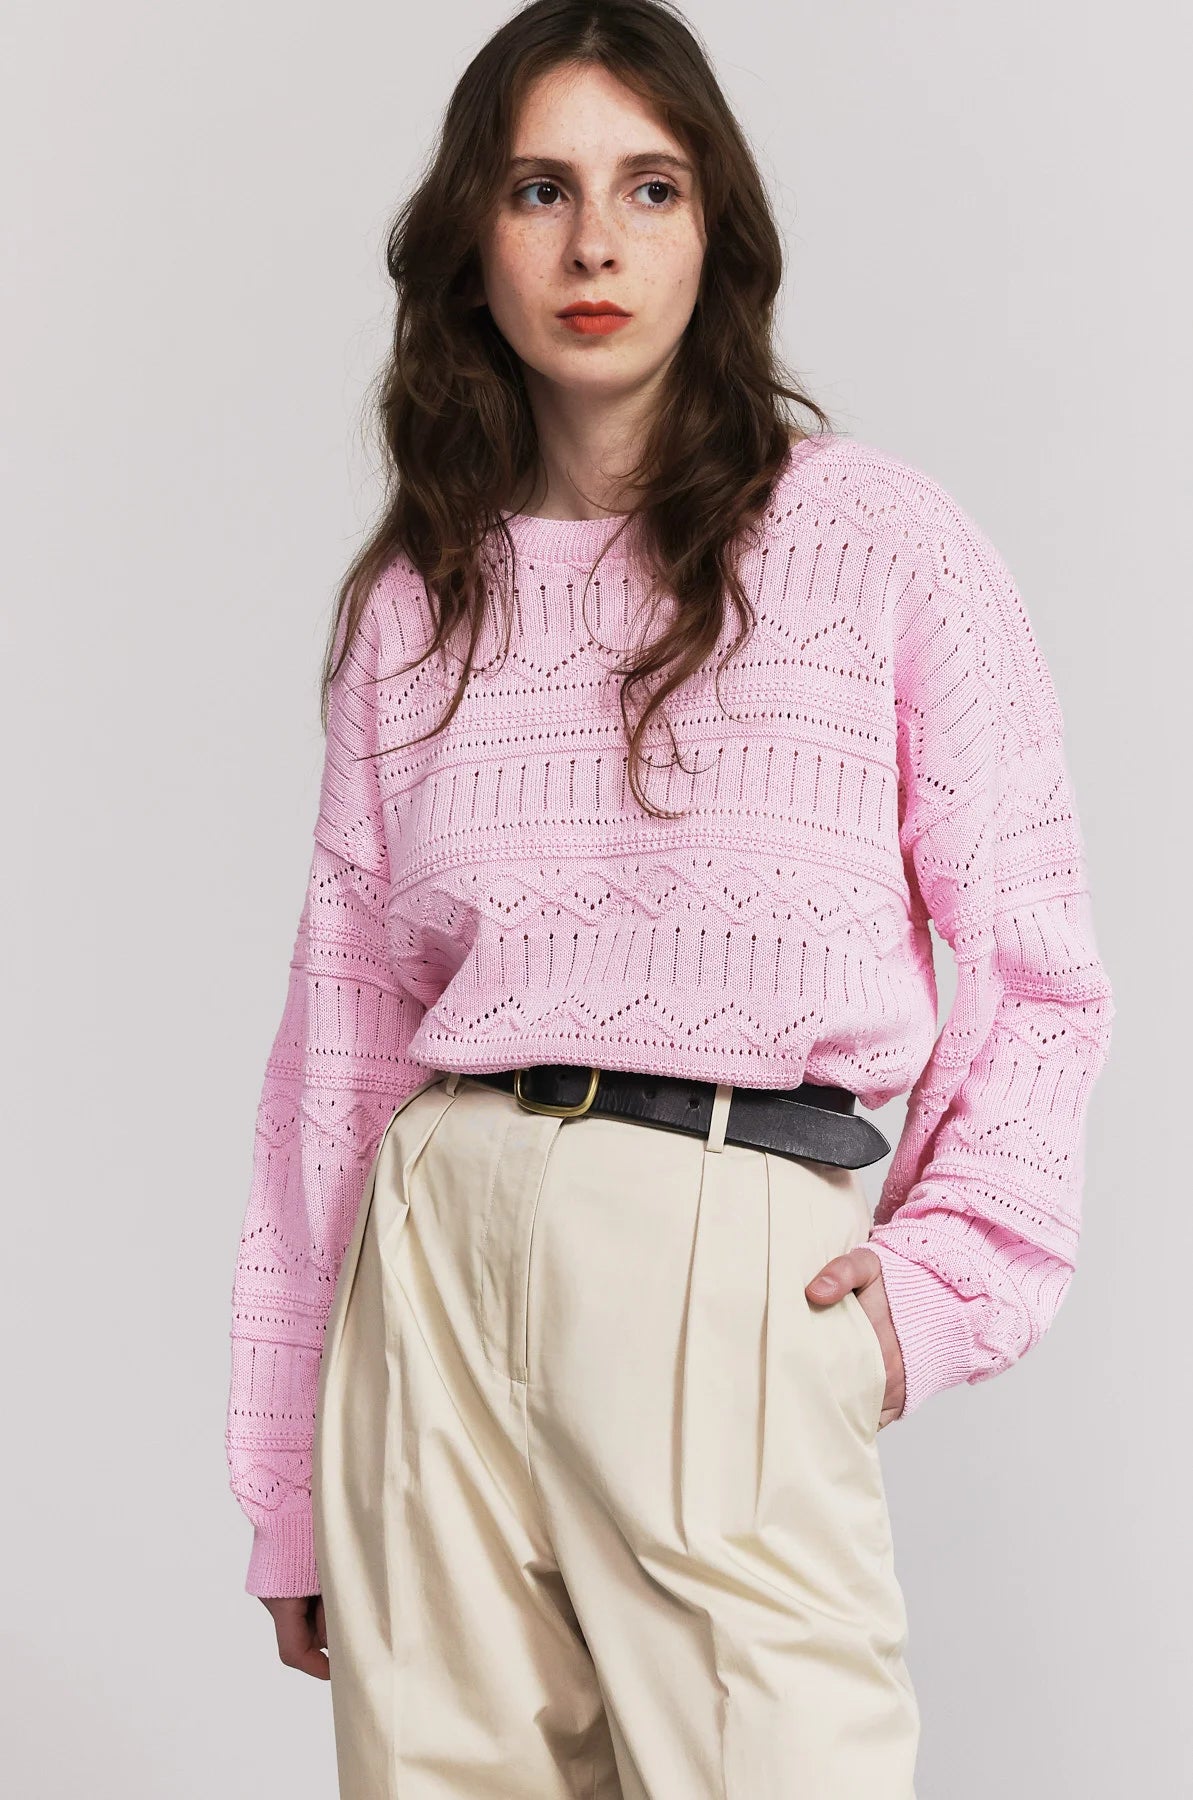 Produit maille Taline manche longues couleur rose tricoté par la marque Parisienne Tricots Jean Marc 1972.